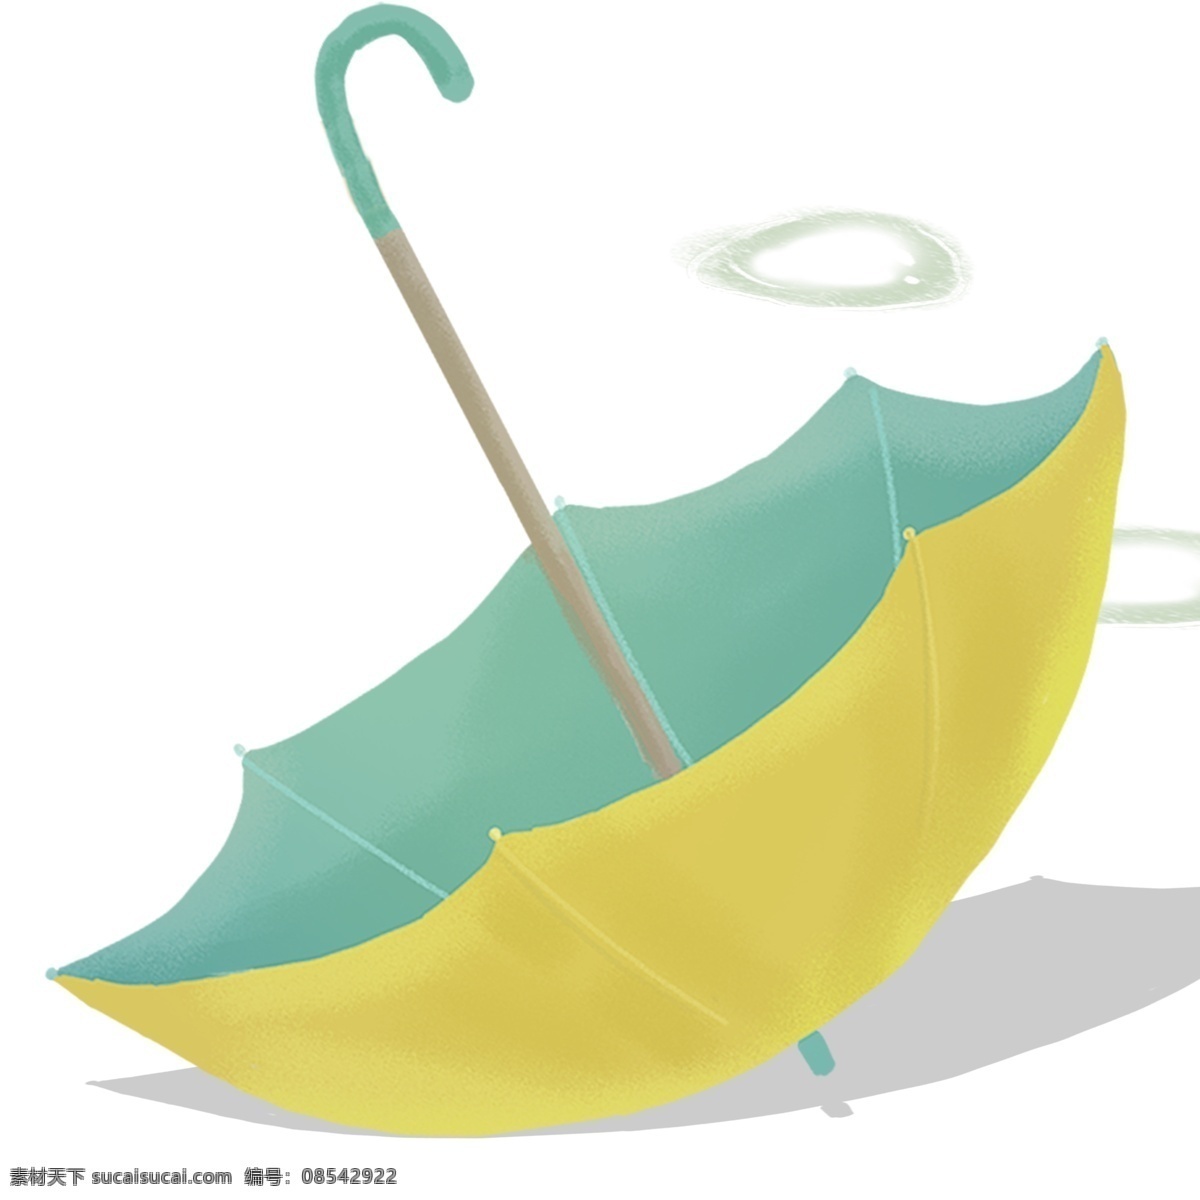 水彩 淡色 雨伞 插画 绘画素材 创意 简约 小清新 装饰图案 文艺 可爱 卡通